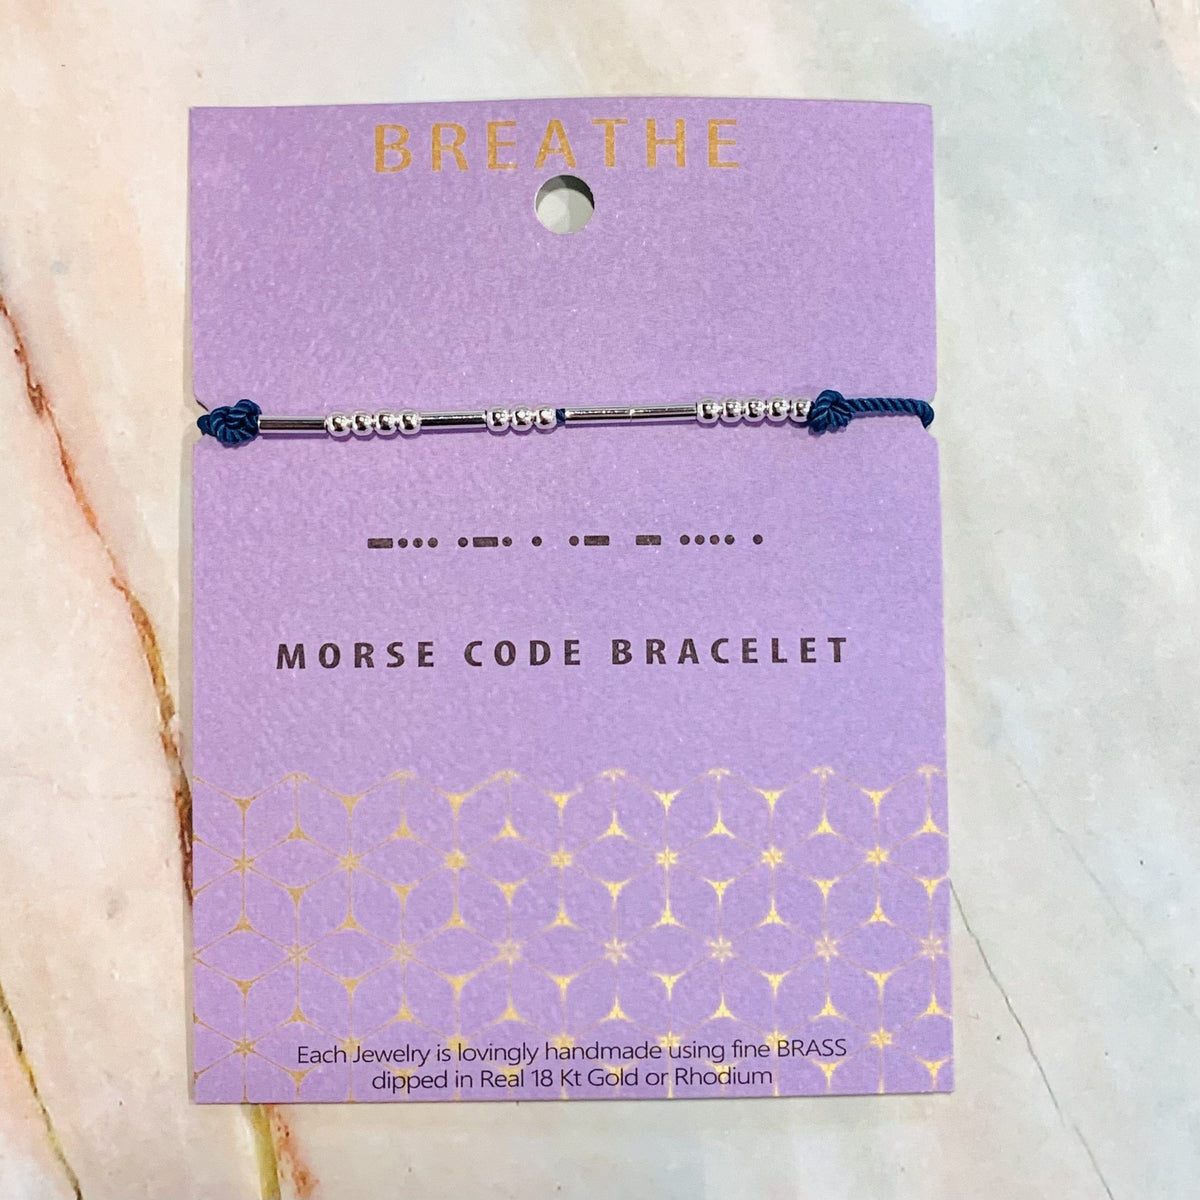 Morse Code Bracelet Lauren-Spencer Breathe 